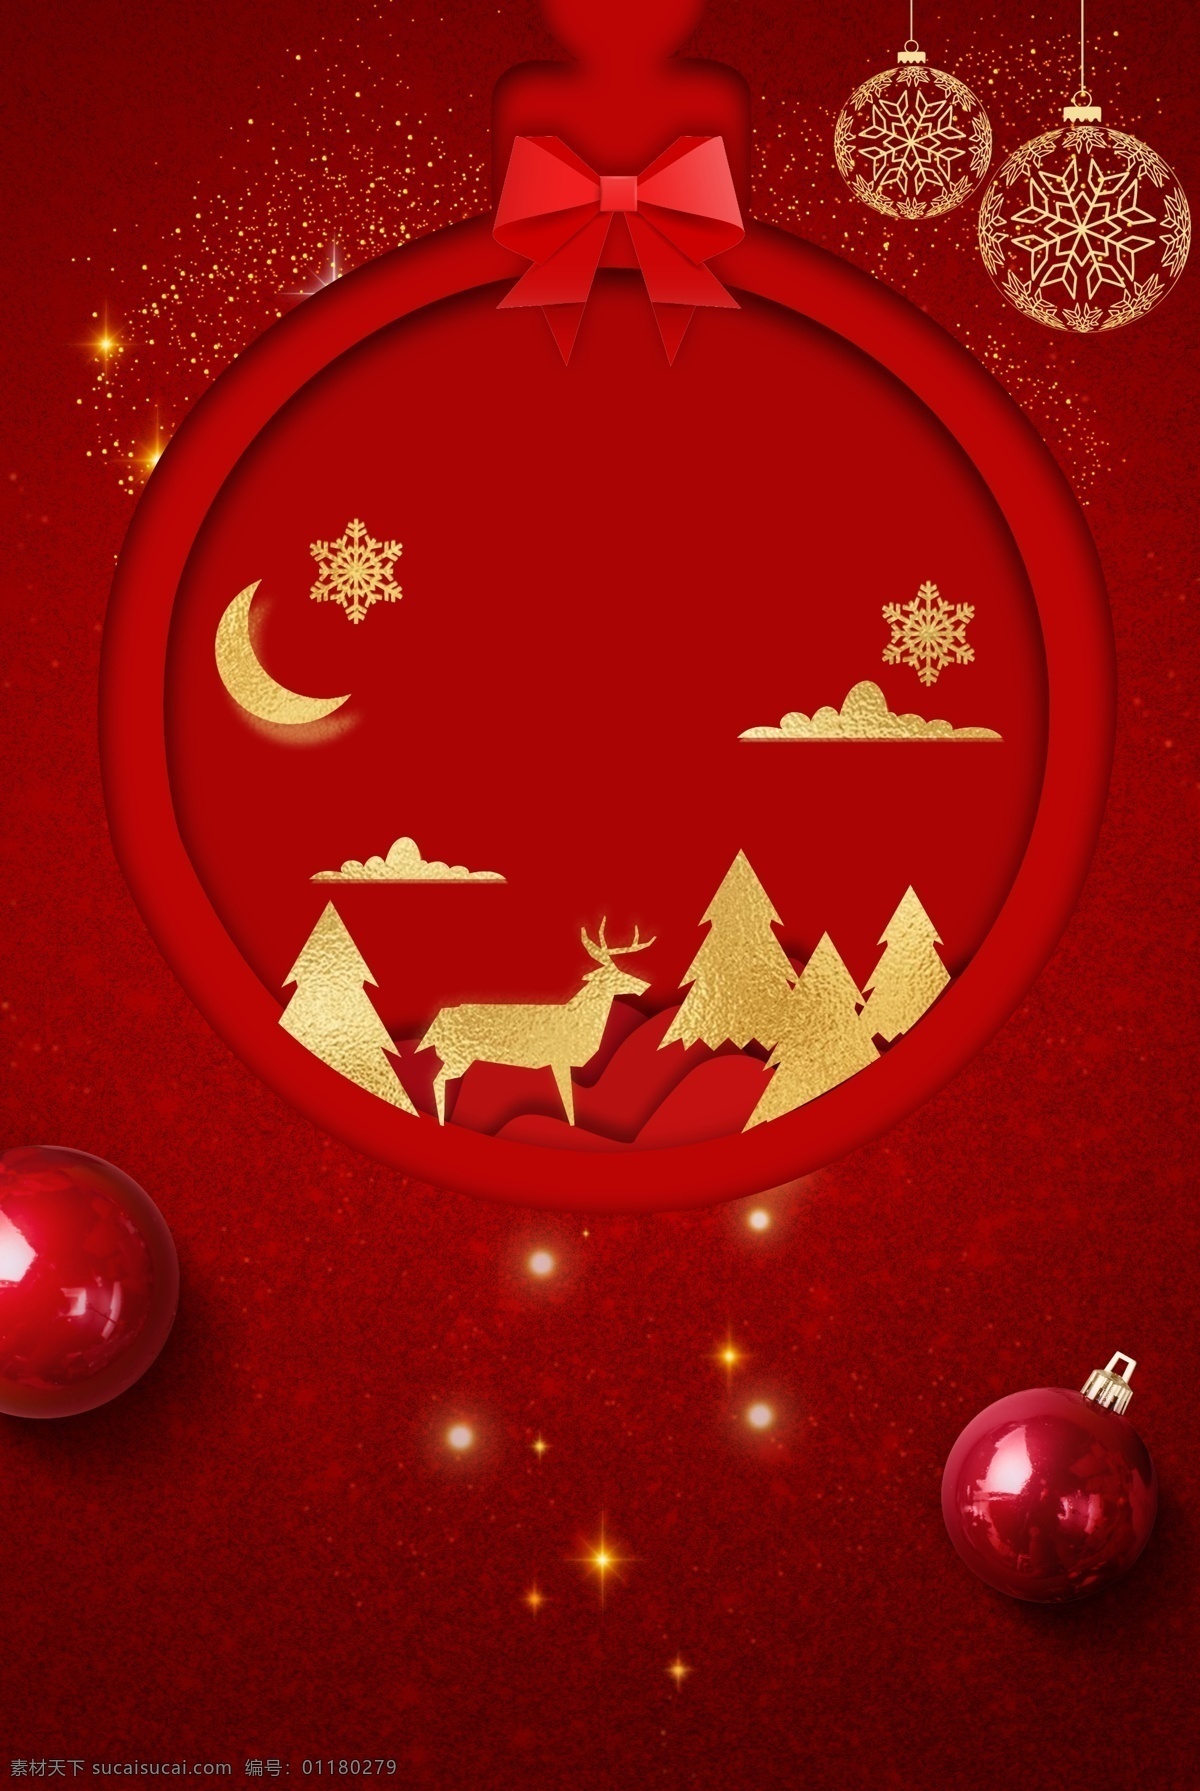 剪纸 风 红色 圣诞 主题 背景 蝴蝶结 圣诞贺卡 创意 圣诞背景 圣诞节 麋鹿 红金背景 psd背景 圣诞装饰 圣诞吊球